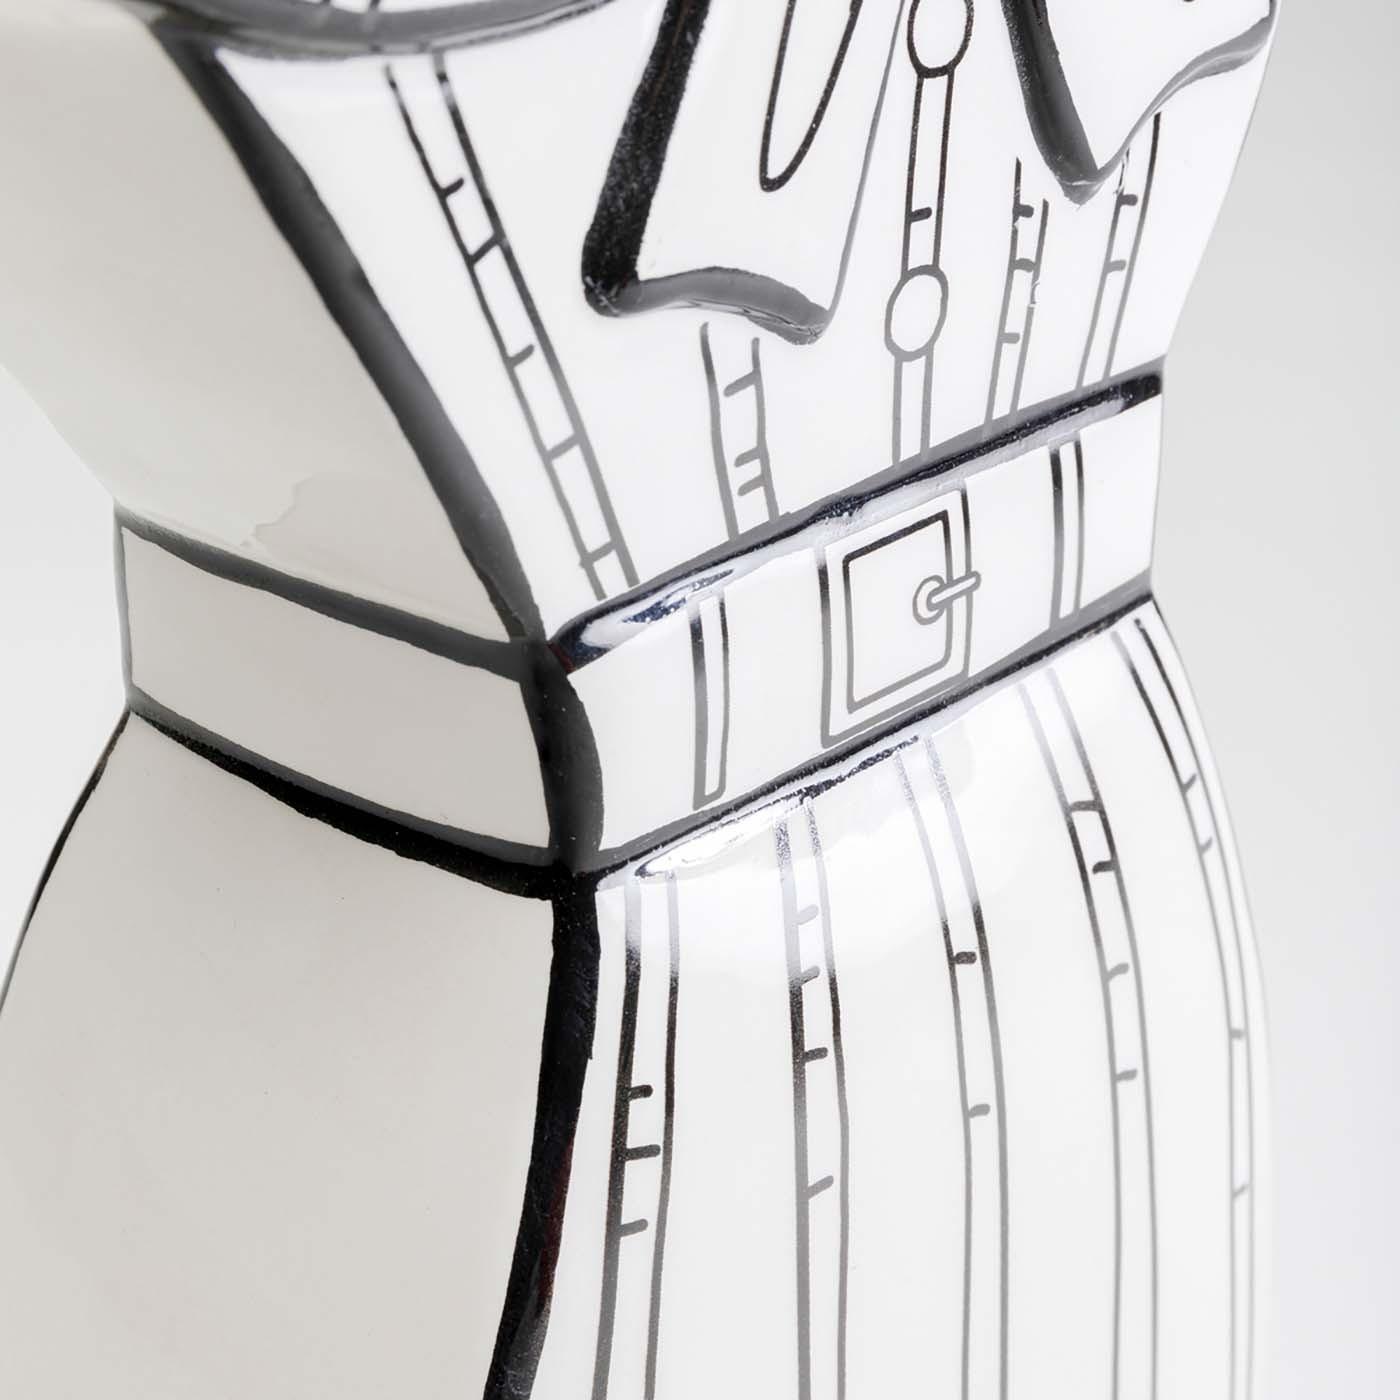 Vase Favola robe blanc et noir Kare Design